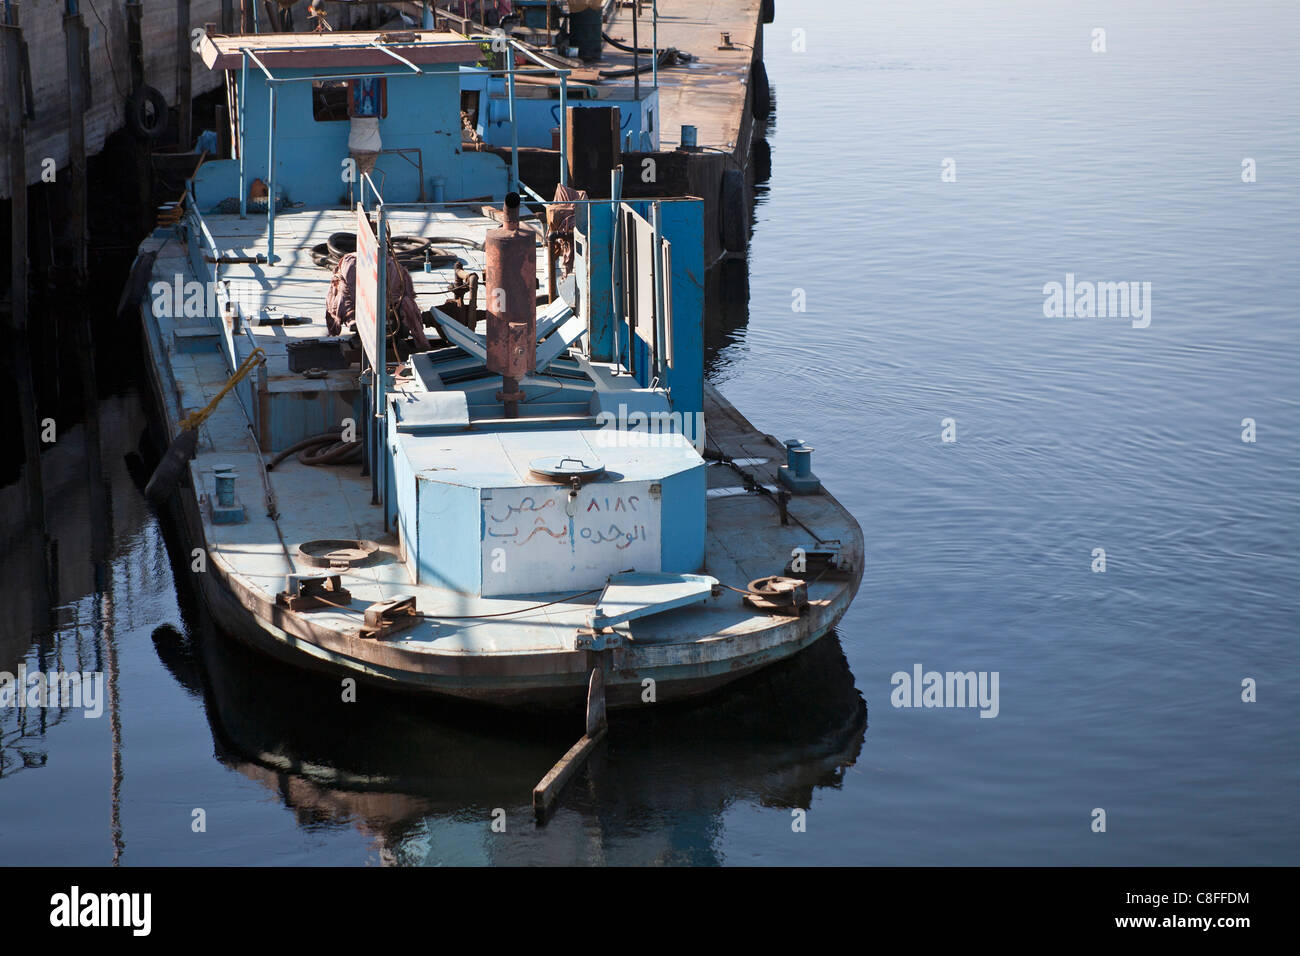 Leicht nach unten auf einem Schlepper arbeiten vertäut Heck gerichtete Kamera am Steg mit Reflexion in ruhigem Wasser, Fluss Nil Ägypten Stockfoto